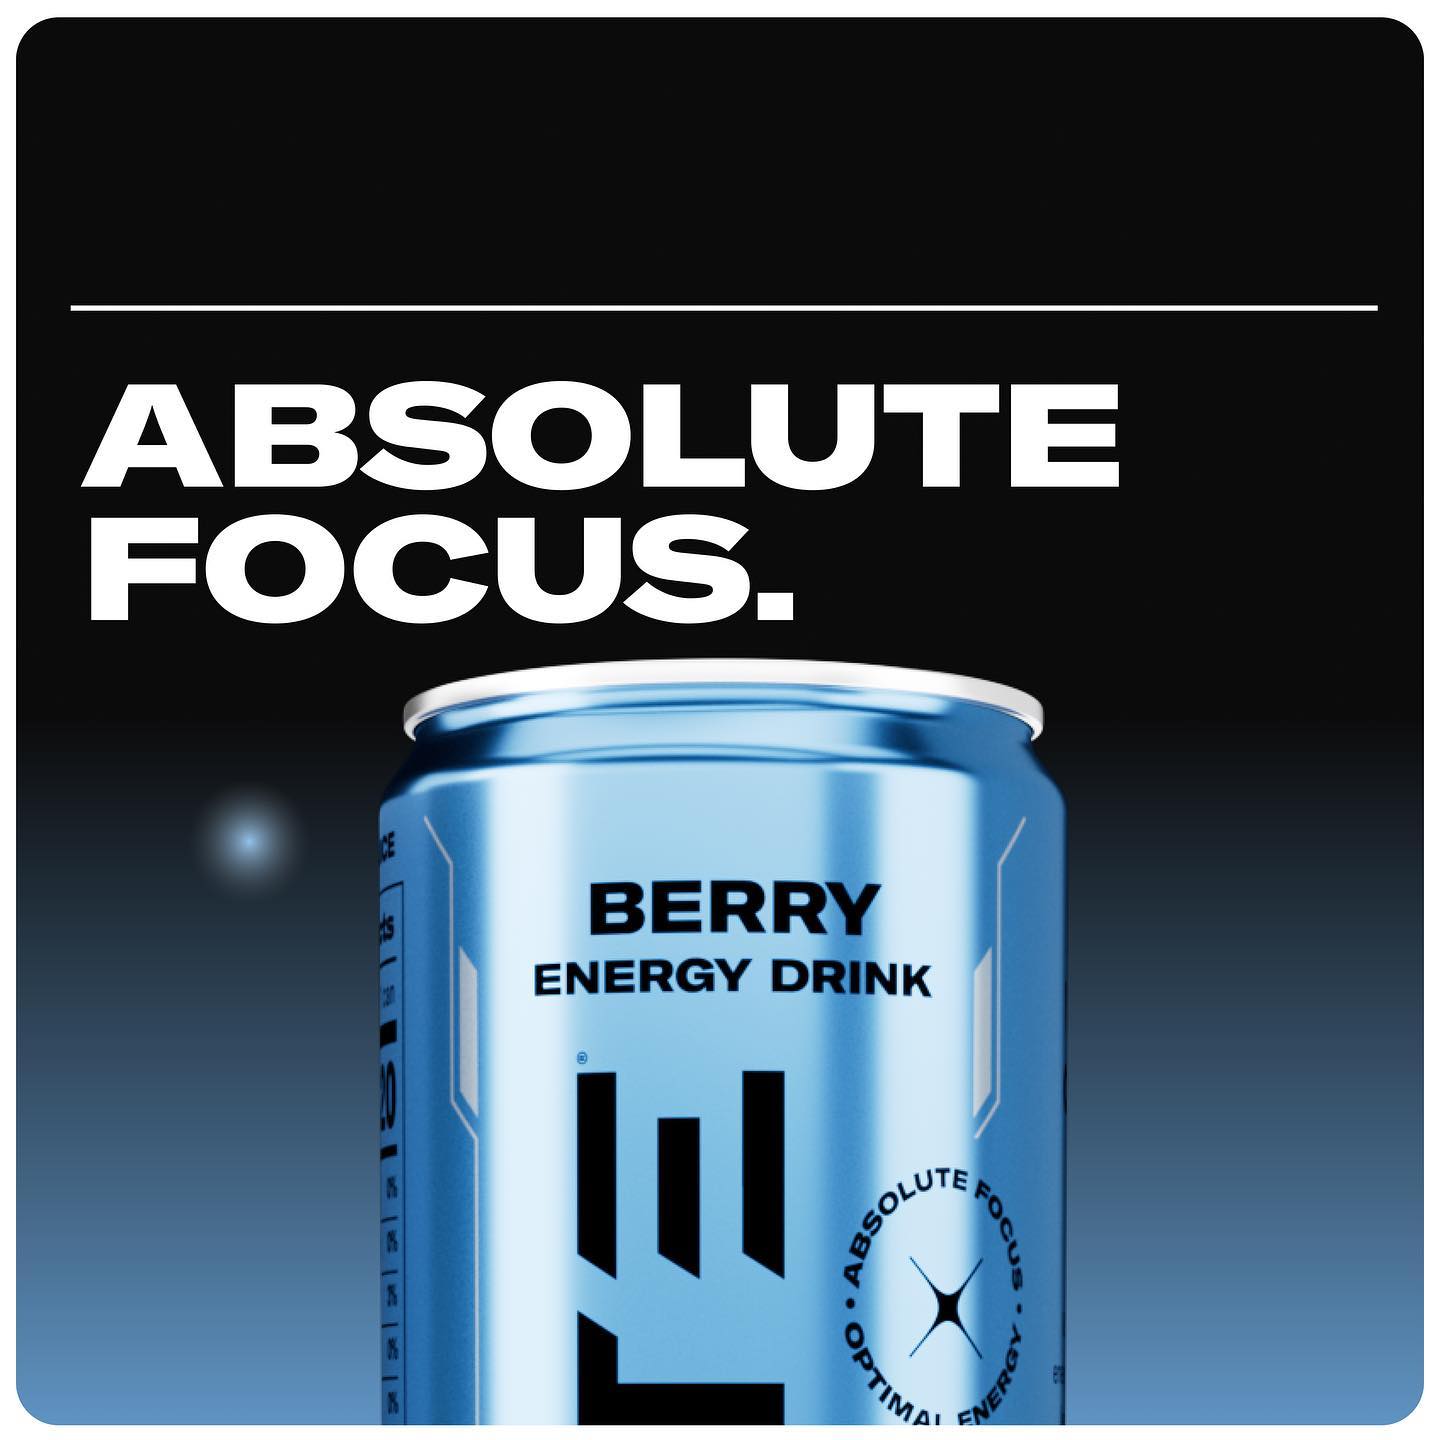 Update Energy Drink: Absolute Focus